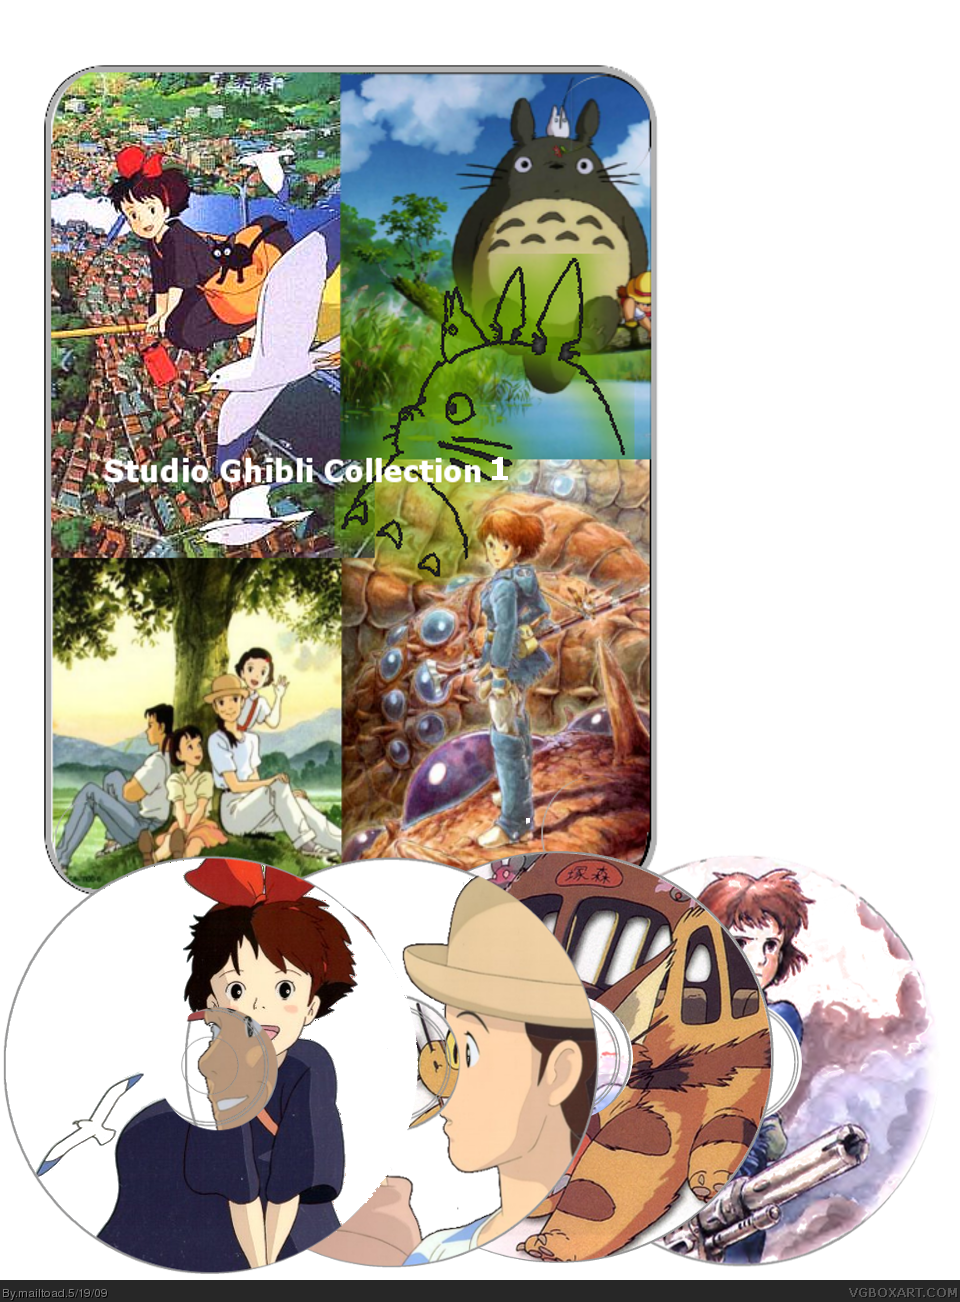 Studio Ghibli Collection 1 box cover